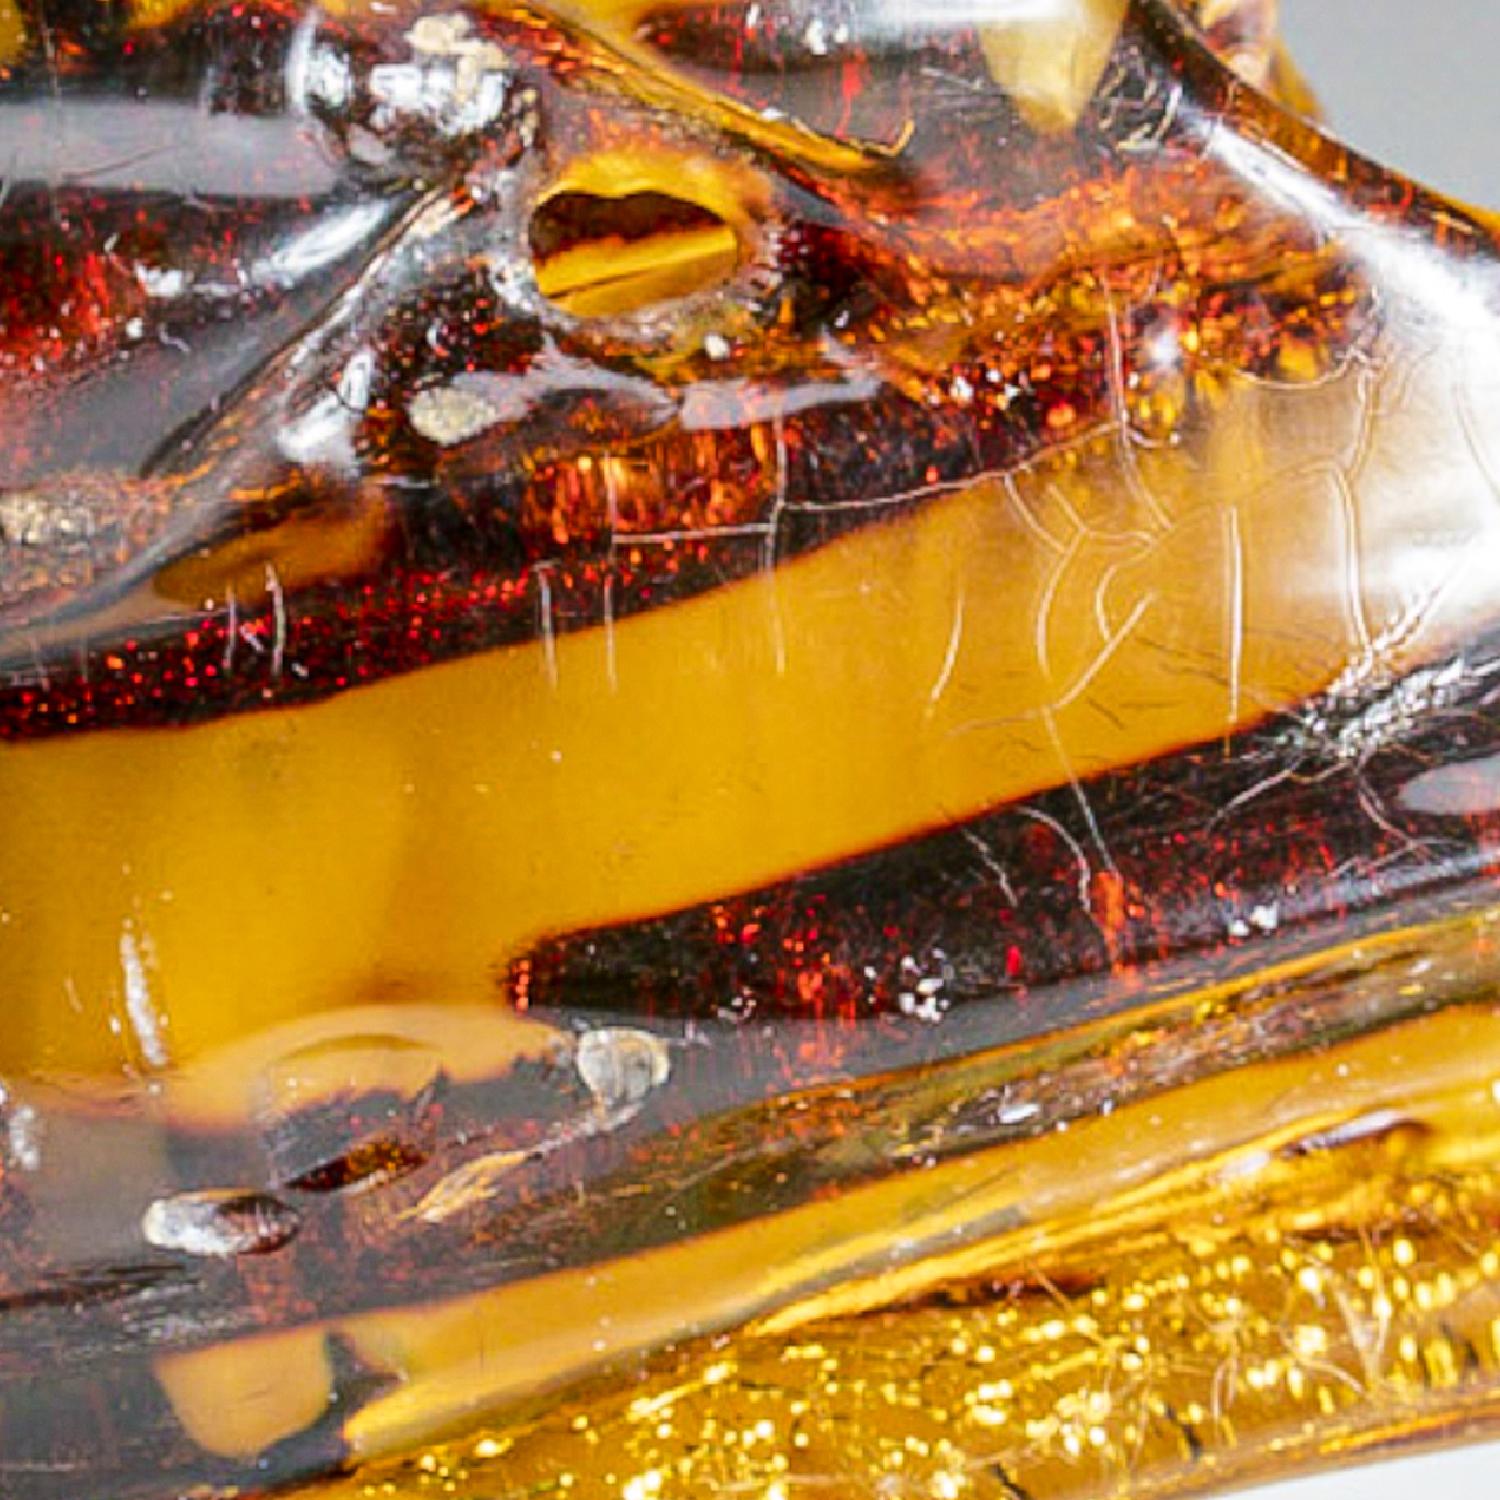 Ce spécimen transparent d'ambre colombien naturel est poli pour mettre en valeur sa clarté intérieure et comprend de l'ambre parmi les plus belles qualités au monde. L'ambre est de la sève d'arbre préhistorique qui a été fossilisée. Ce spécimen